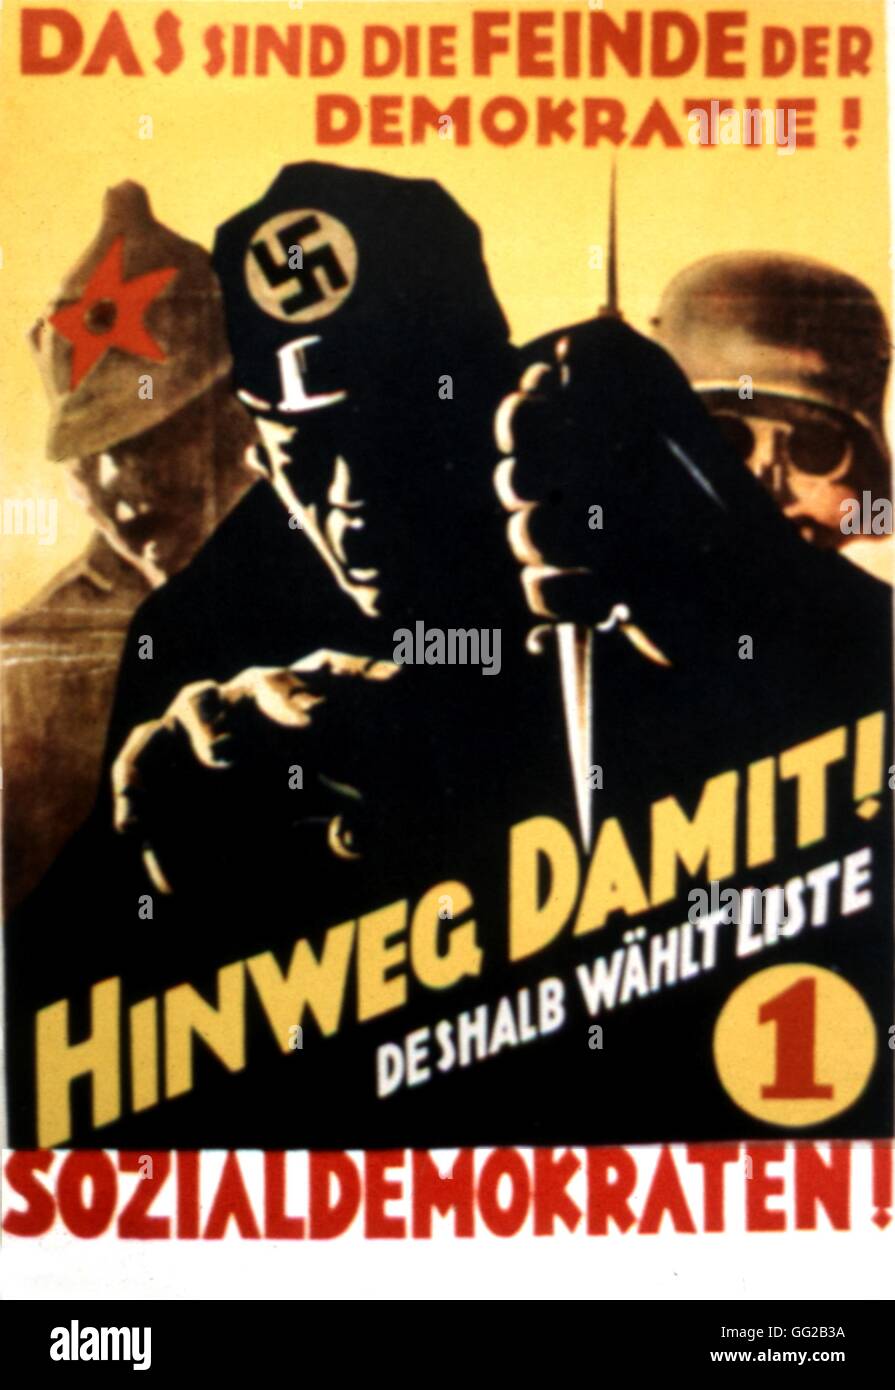 Propaganda-Wahlplakat für die Sozialdemokratische Partei Deutschlands (SPD): "Hier sind die Feinde der Demokratie!" 1930-Deutschland Stockfoto